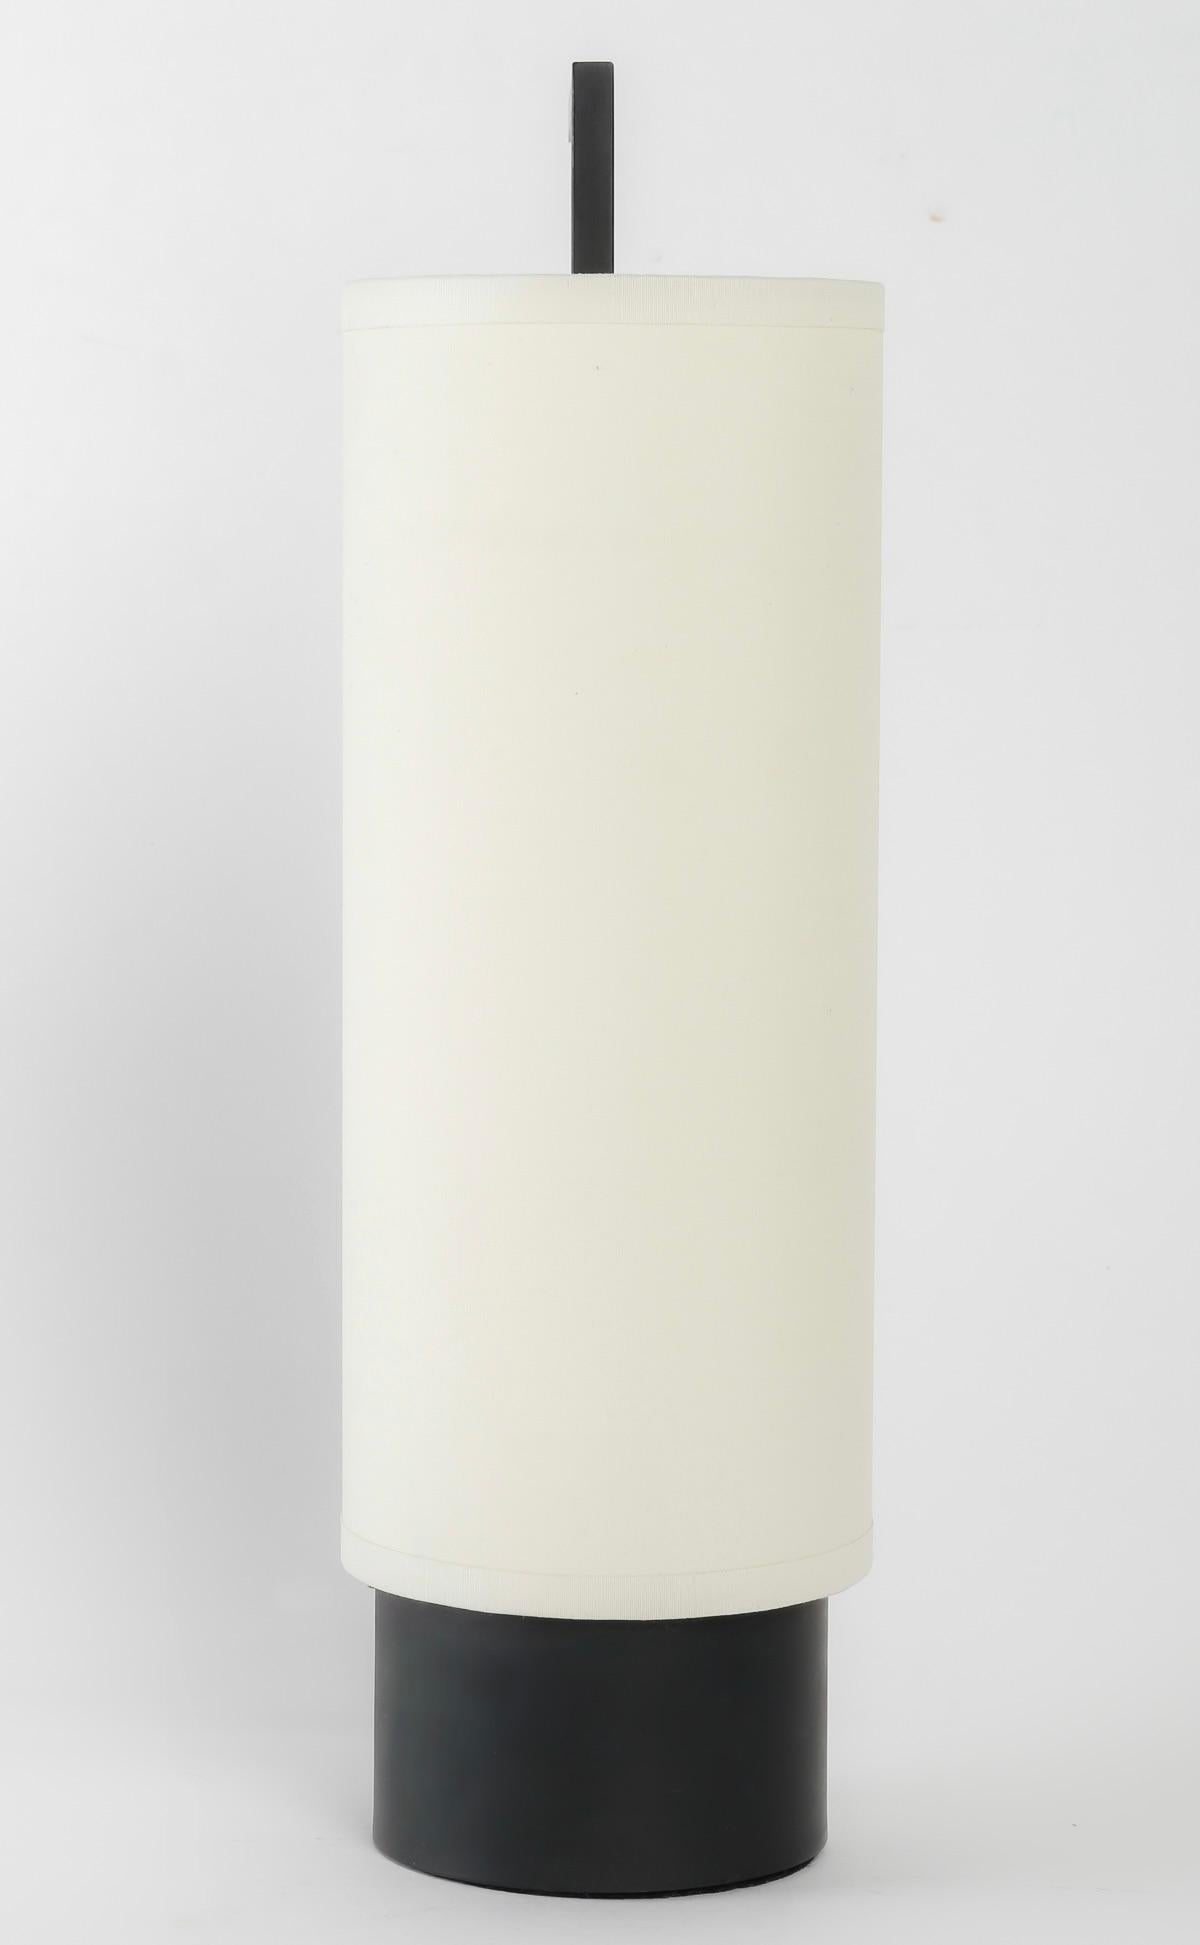 Composé d'un socle cylindrique noir sur lequel repose un abat-jour en coton blanc cassé de forme cylindrique épousant le socle et maintenu par une tige en fer forgé noir de section carrée qui longe l'abat-jour et se prolonge vers le haut à angle